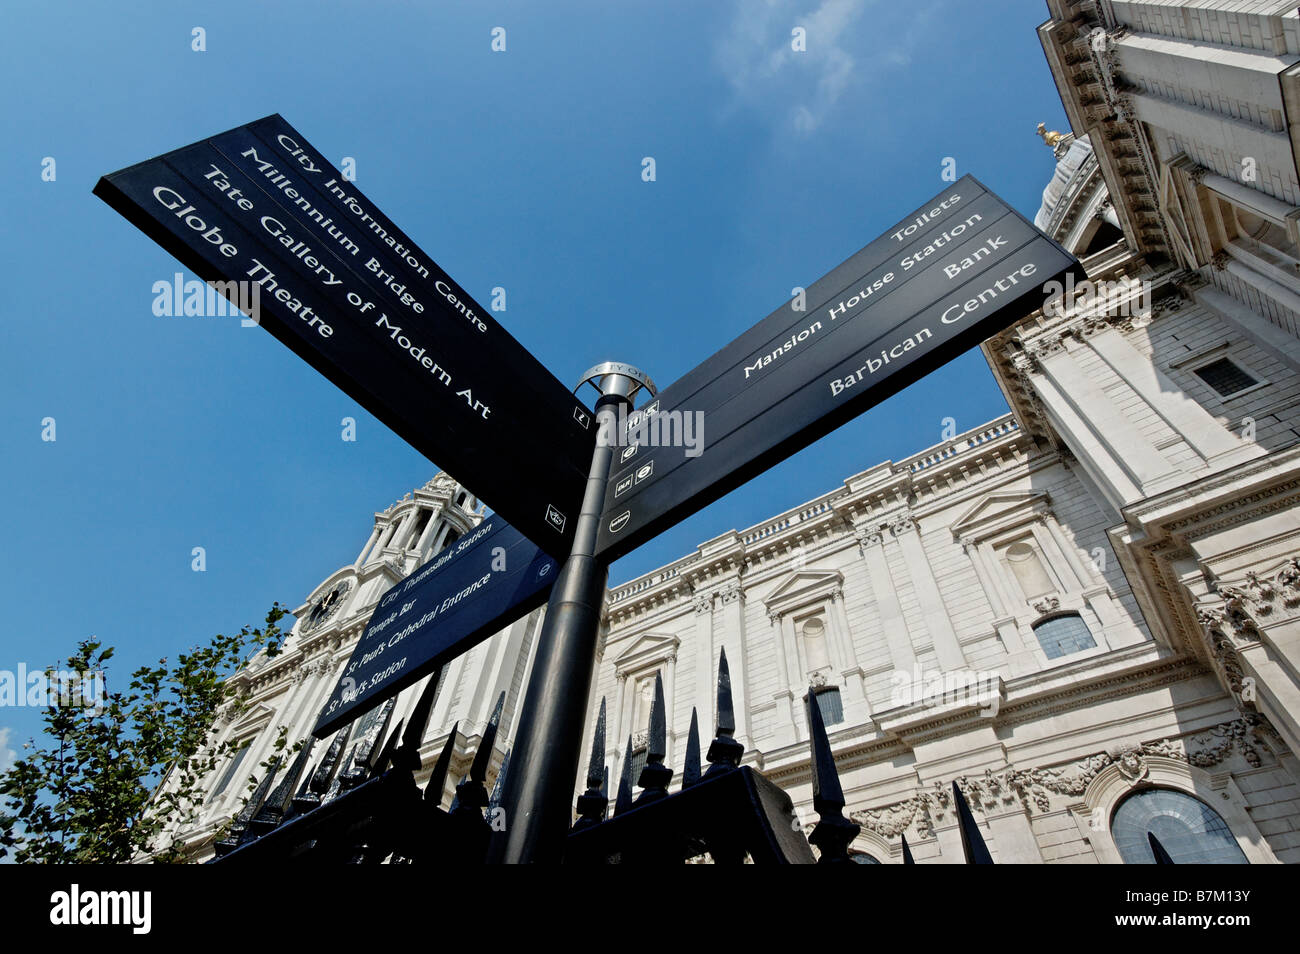 Blickte zu St Pauls Cathedral und ein Zeichen für verschiedene touristische Attraktionen Stockfoto